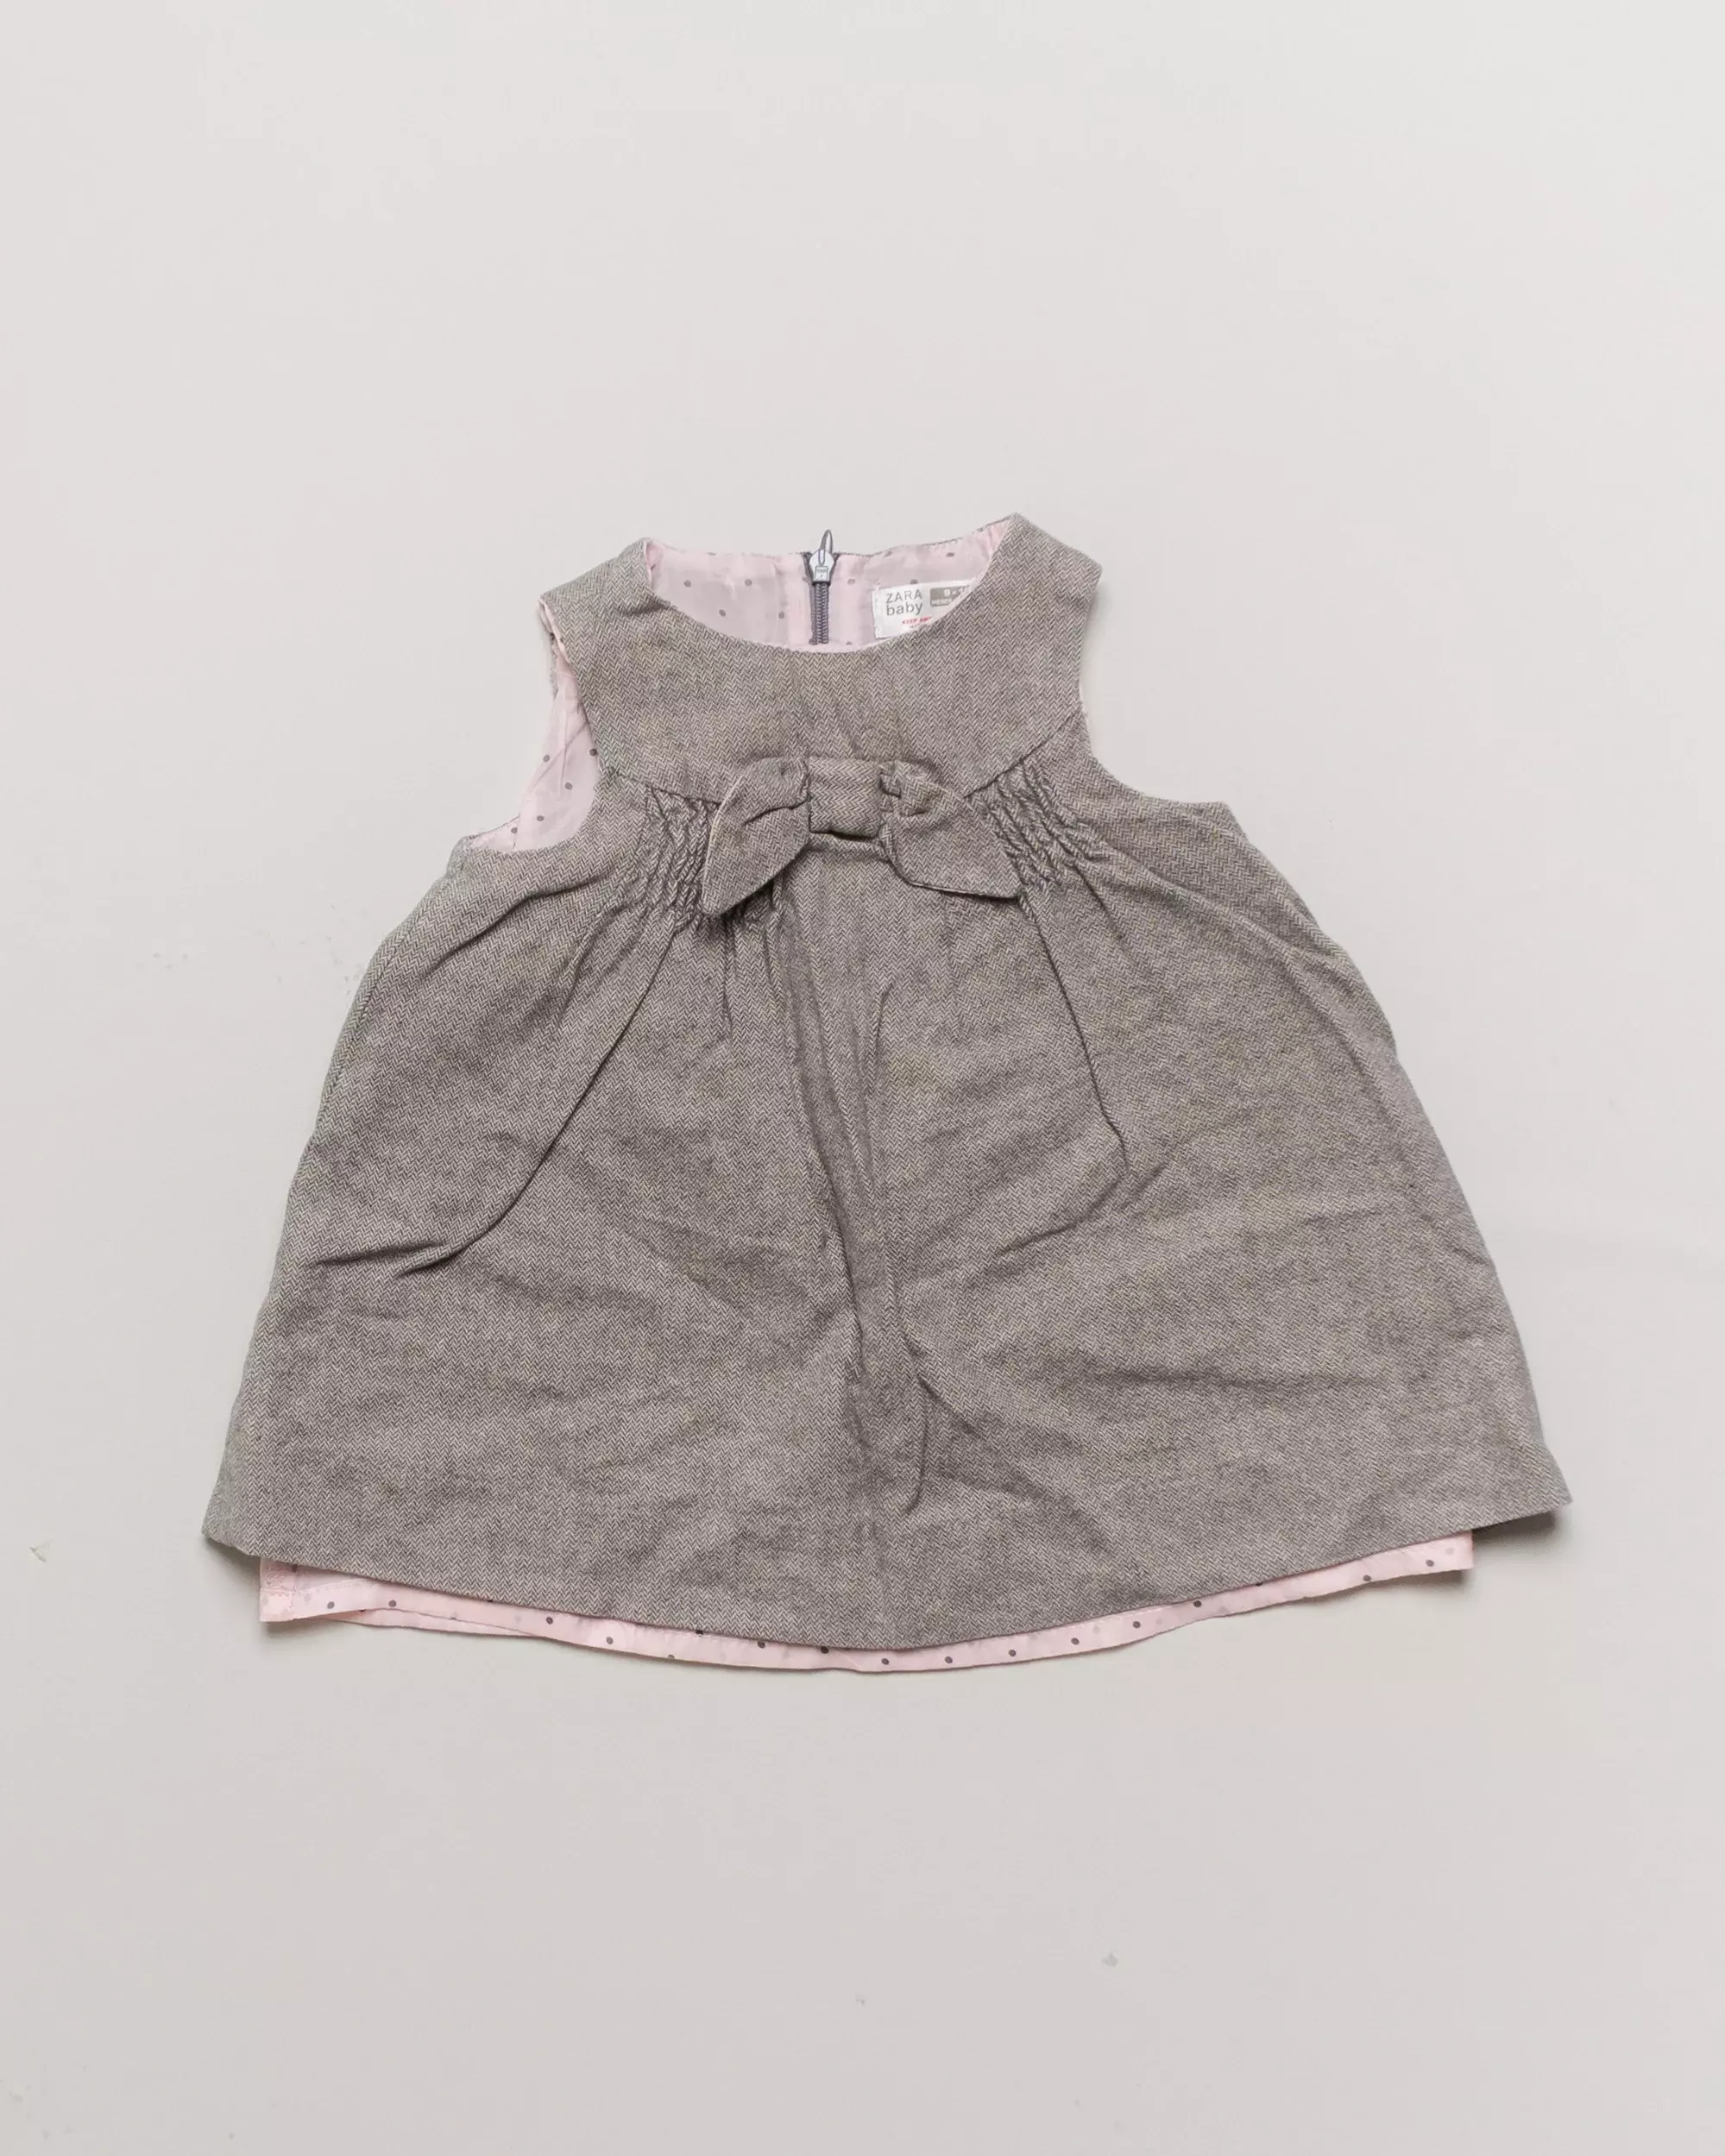 Kleid in Gr. 74/80 – Zara rosa Fischgrät Muster beige Schleife